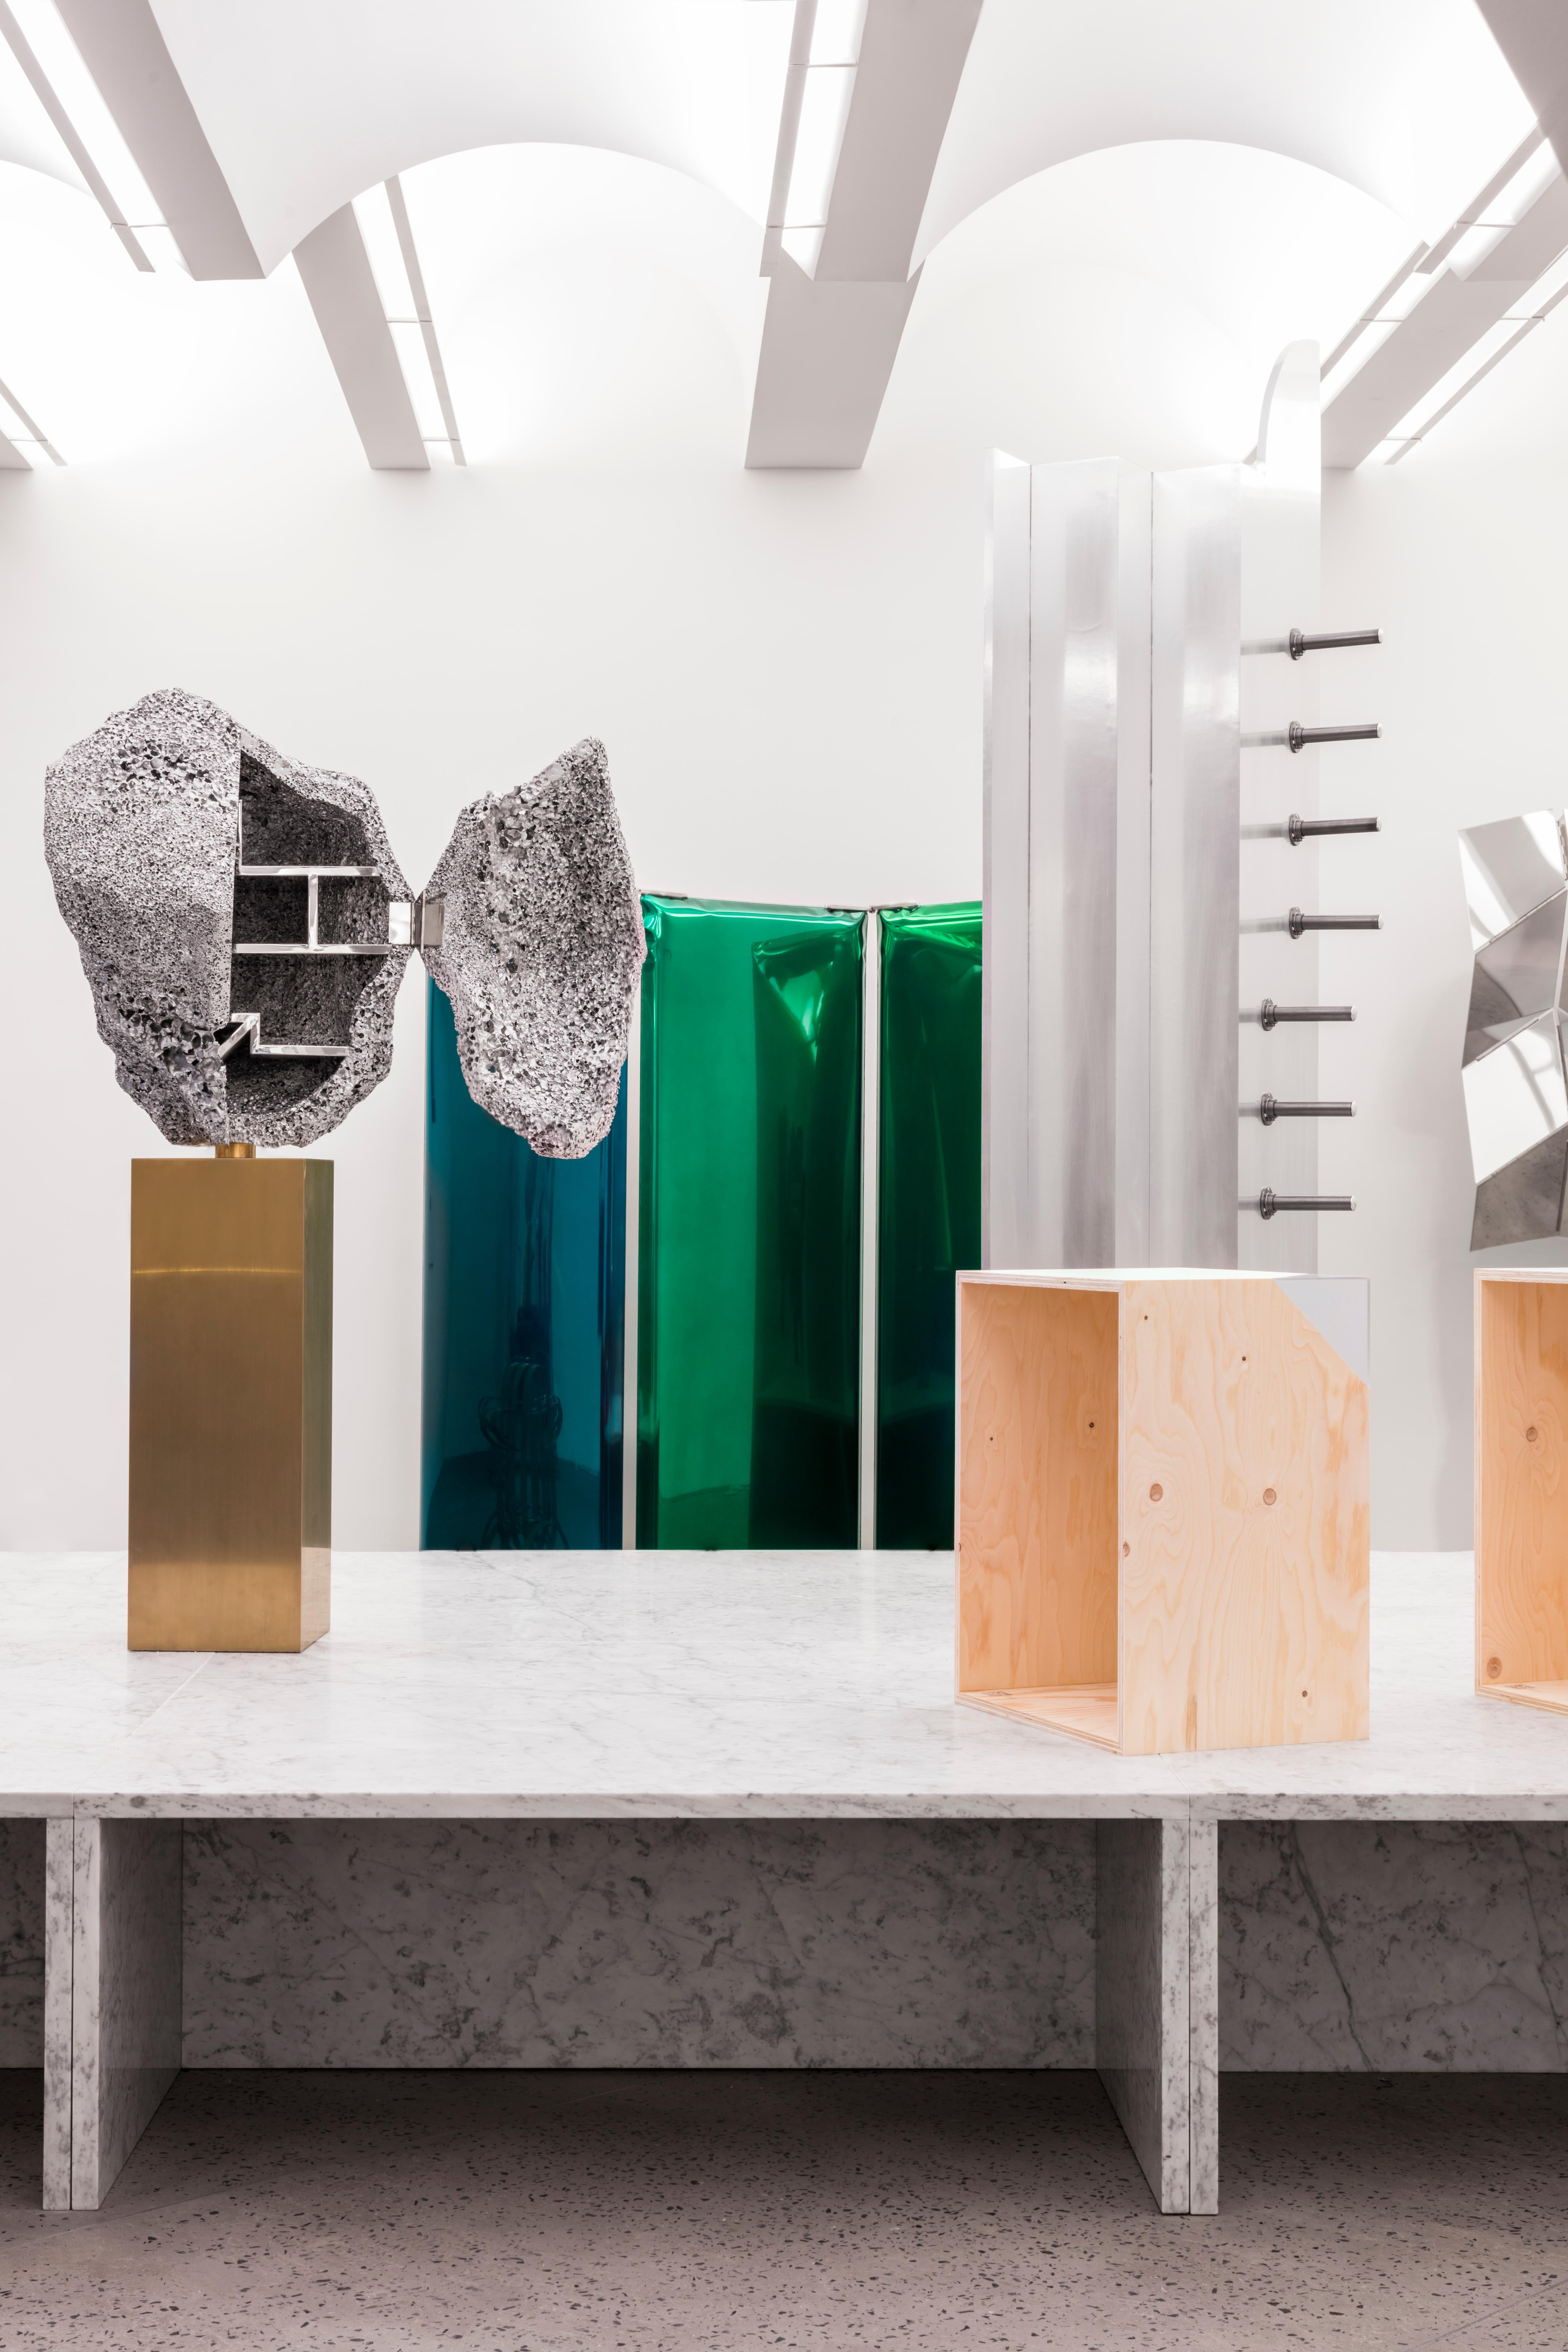 Der Spiegel Sonar Inox ist ein moderner und künstlerischer Blick auf die Frage, wie man einen Raum vorübergehend teilen oder einen neuen Raum von Grund auf neu schaffen kann. Polierter Stahl ermöglicht es, einen einzigartigen Raum voller Reflexionen